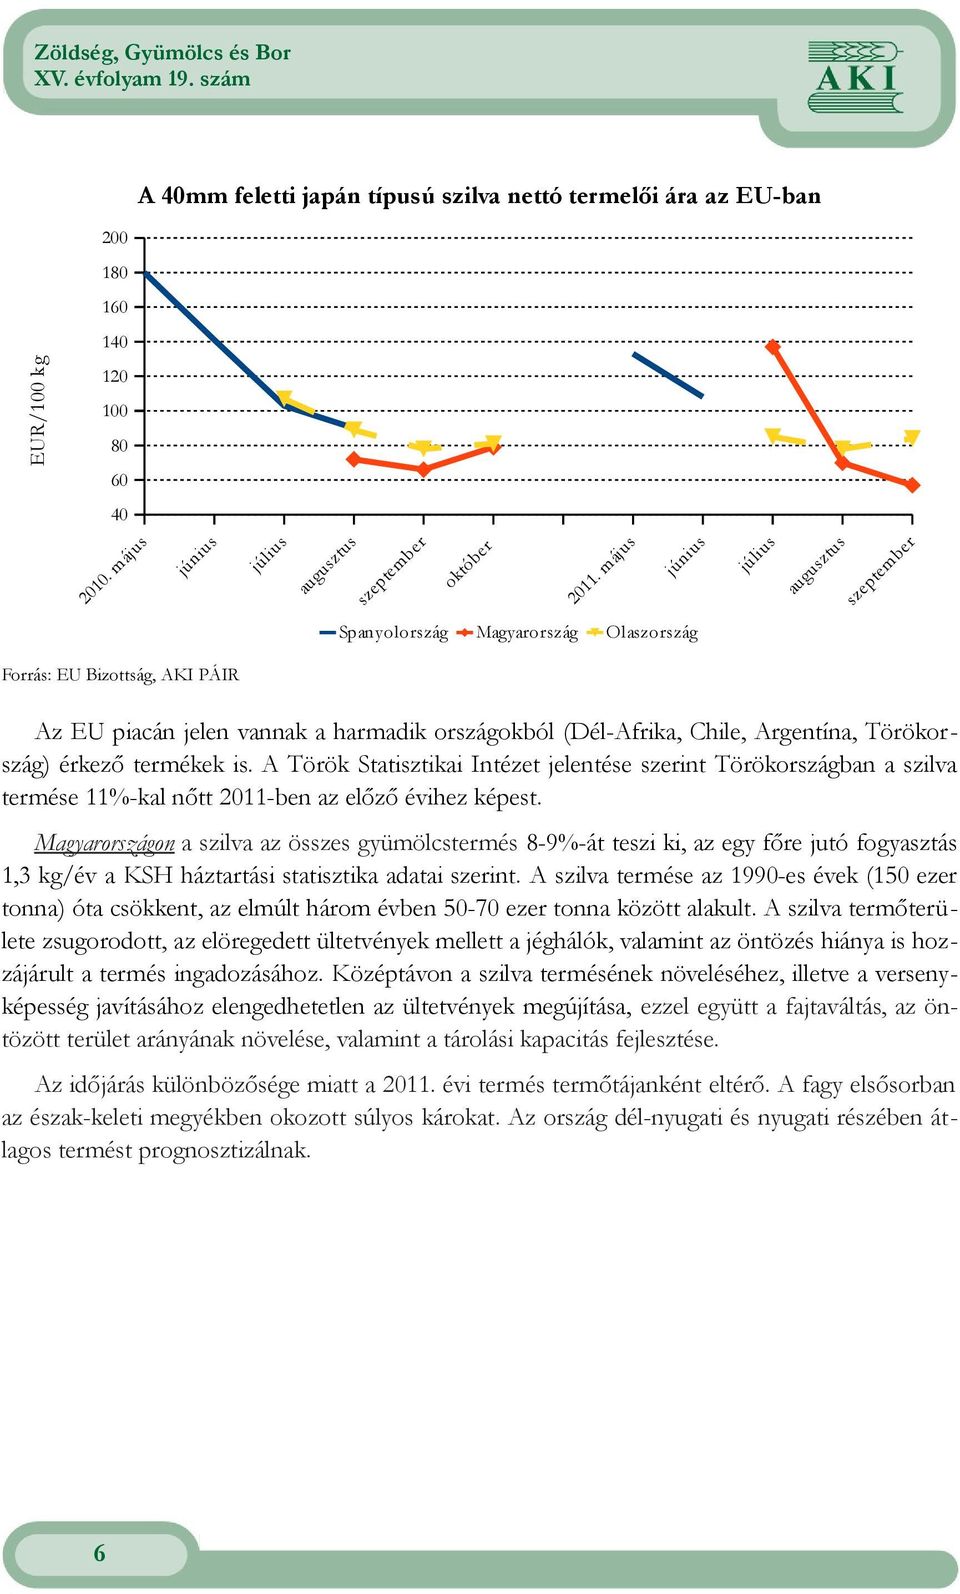 országokból (Dél-Afrika, Chile, Argentína, Törökország) érkező termékek is. A Török Statisztikai Intézet jelentése szerint Törökországban a szilva termése 11%-kal nőtt 2011-ben az előző évihez képest.